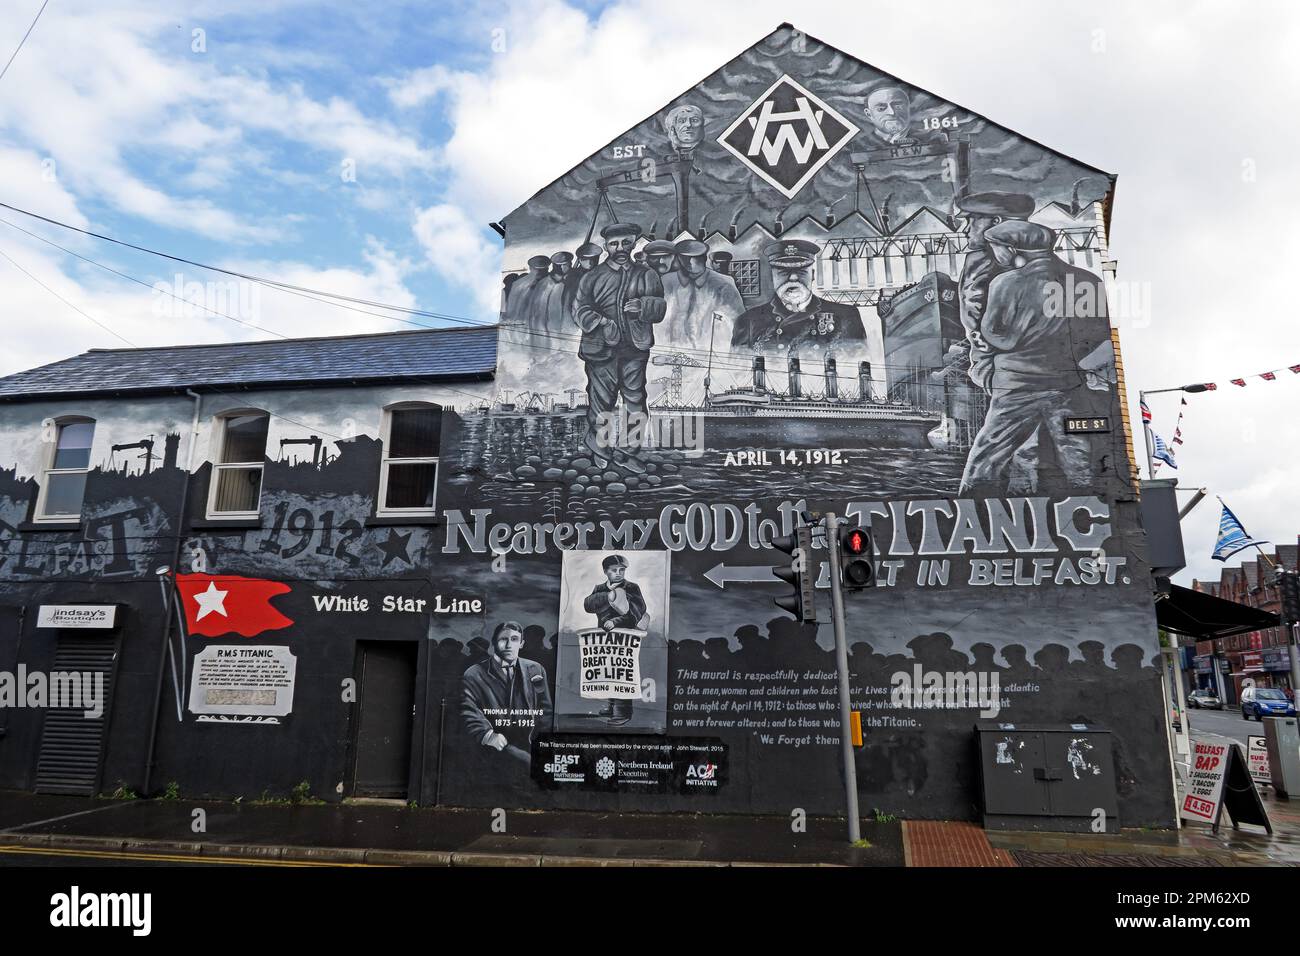 HW, RMS Titanic 14 avril ,1912 peinture murale H&W est 1861, Dee Street, Belfast, Irlande du Nord, Royaume-Uni, BT4 1FT Banque D'Images